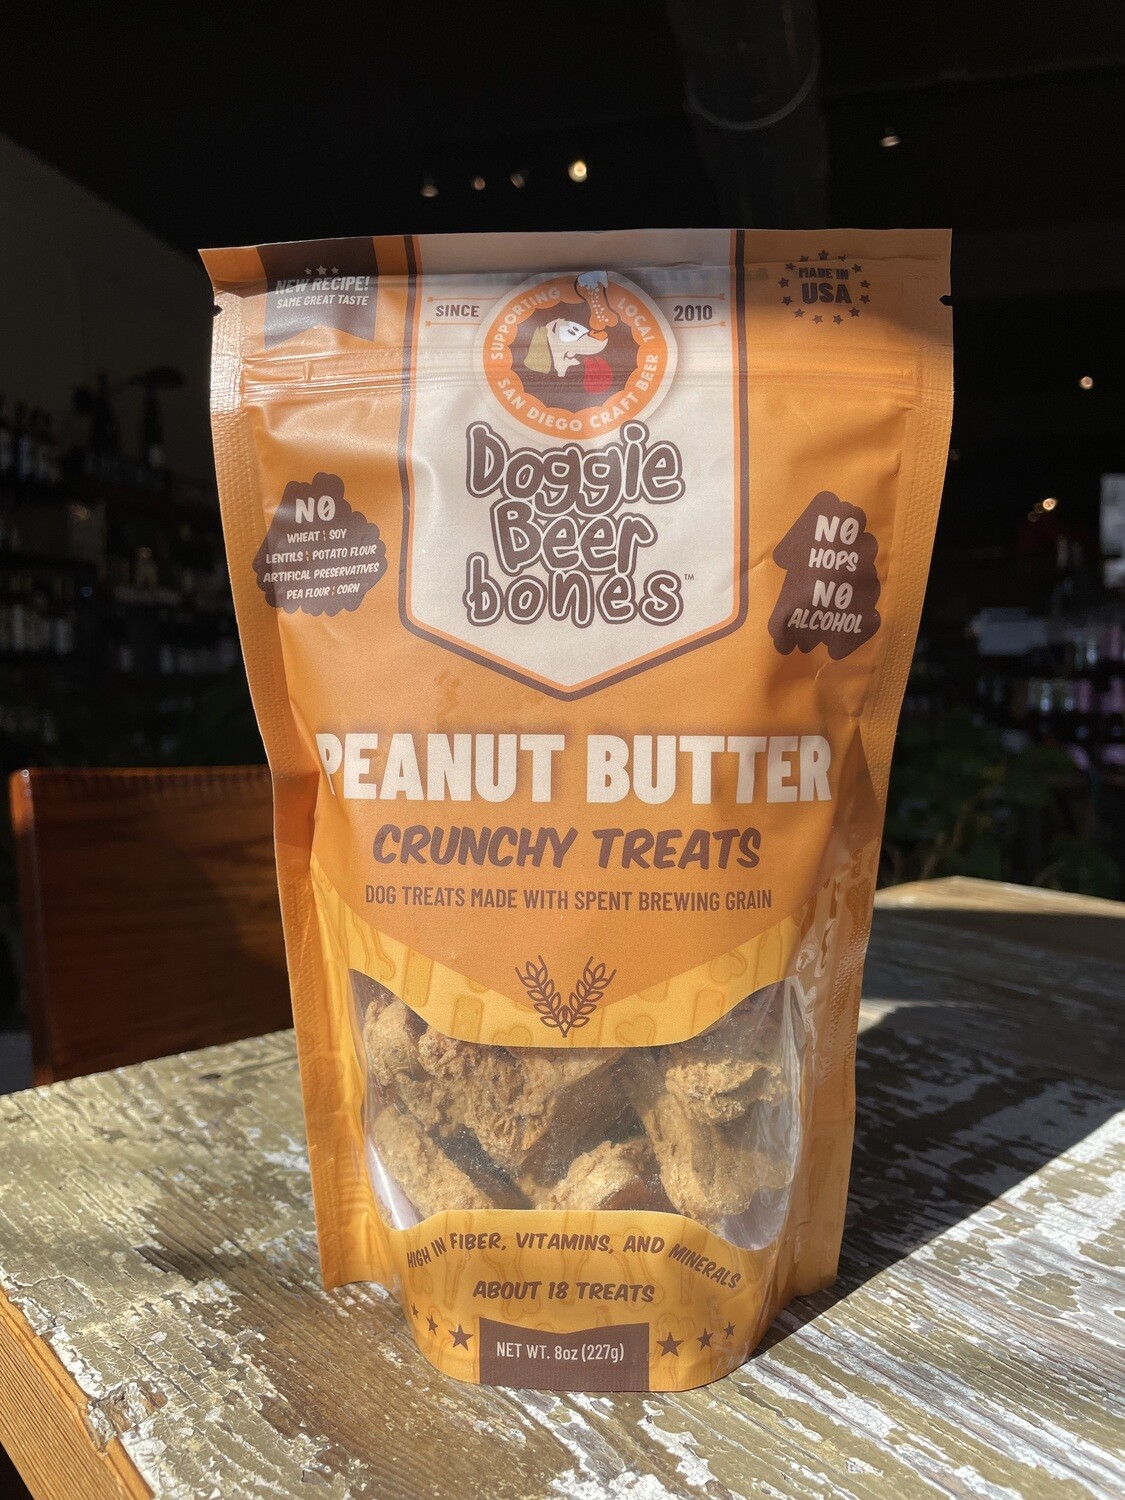 DoggieBeerBones Peanut Butter Treats